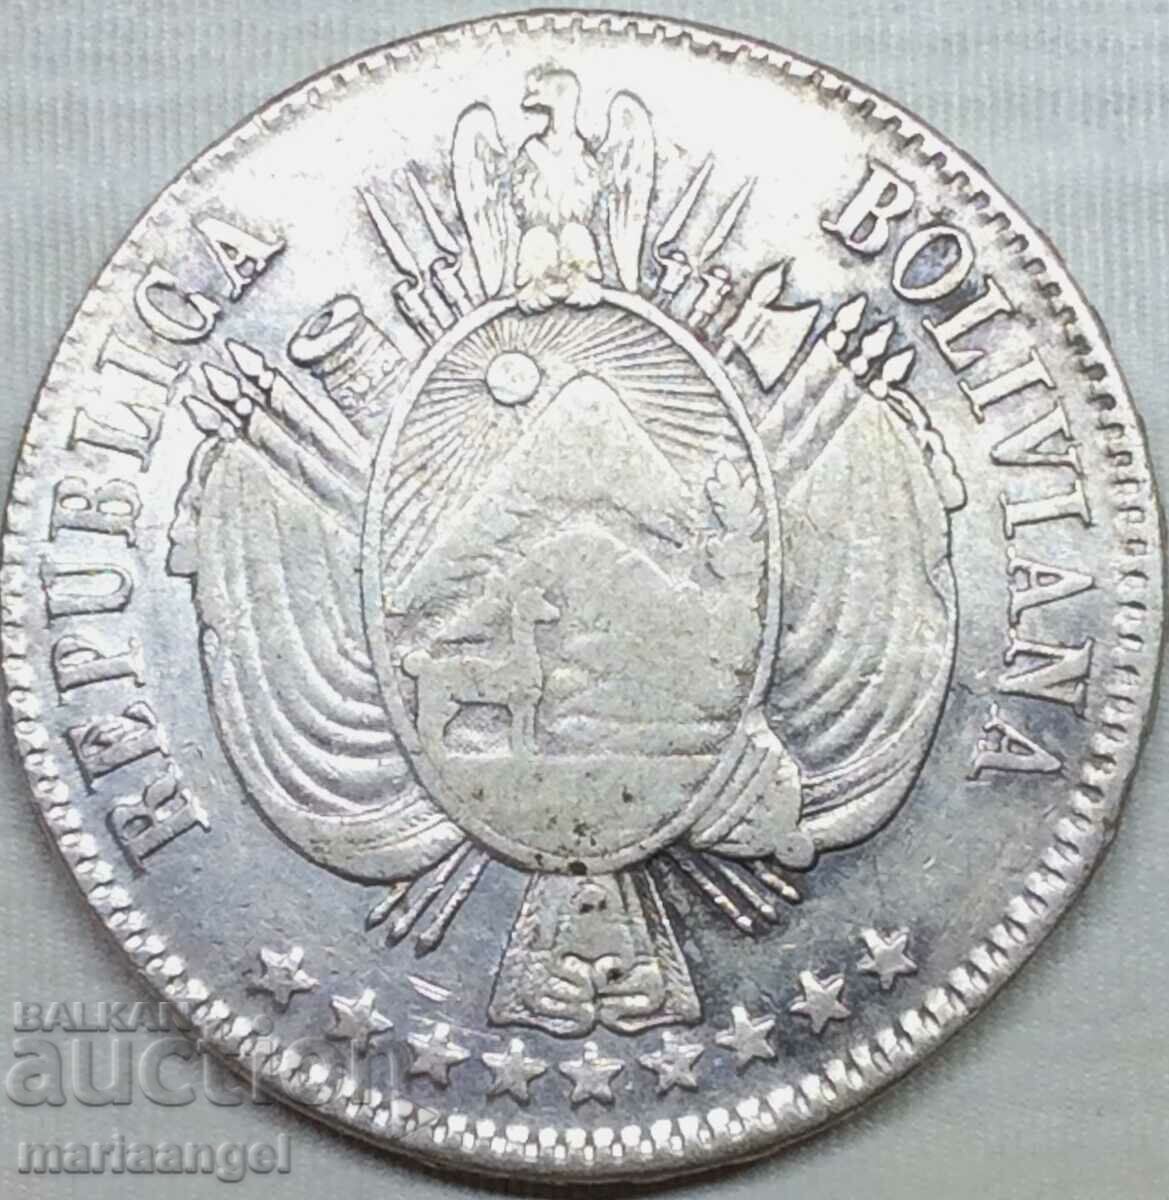 Боливия 1865 1 боливиано 24,85г сребро - крайне рядка